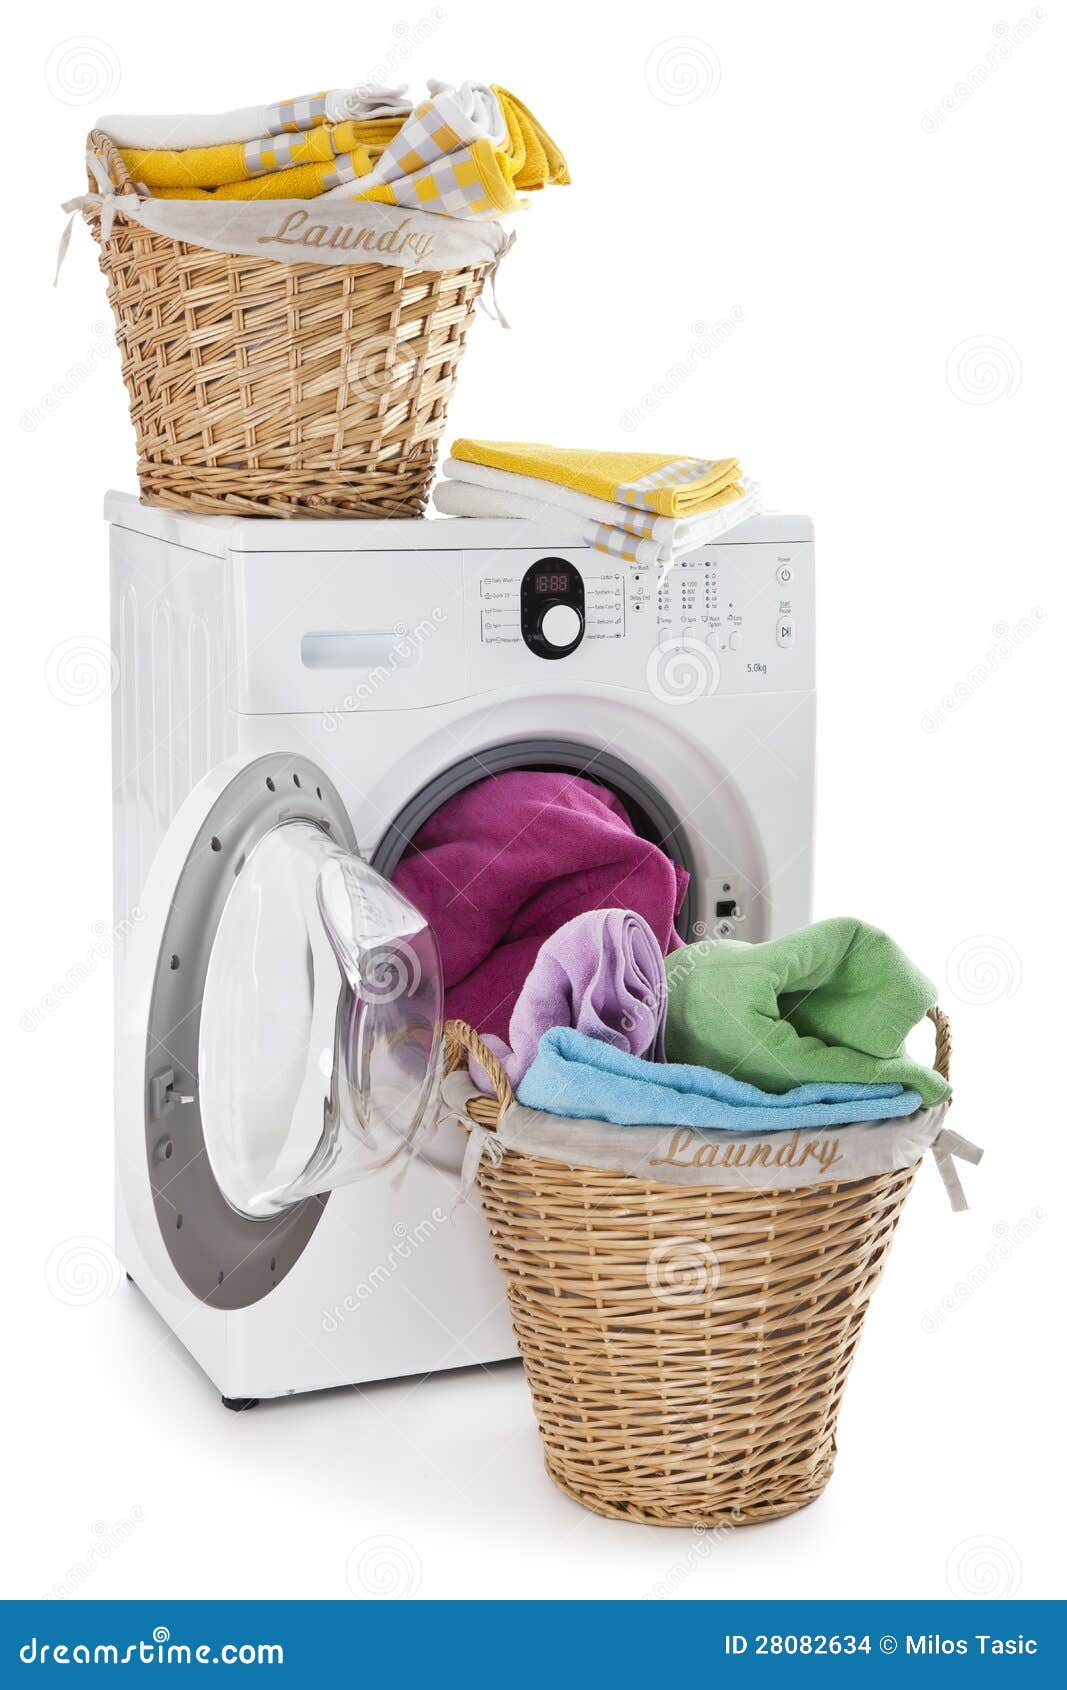 Laundry Basket On A Washing Machine Stock Images - Image: 28082634